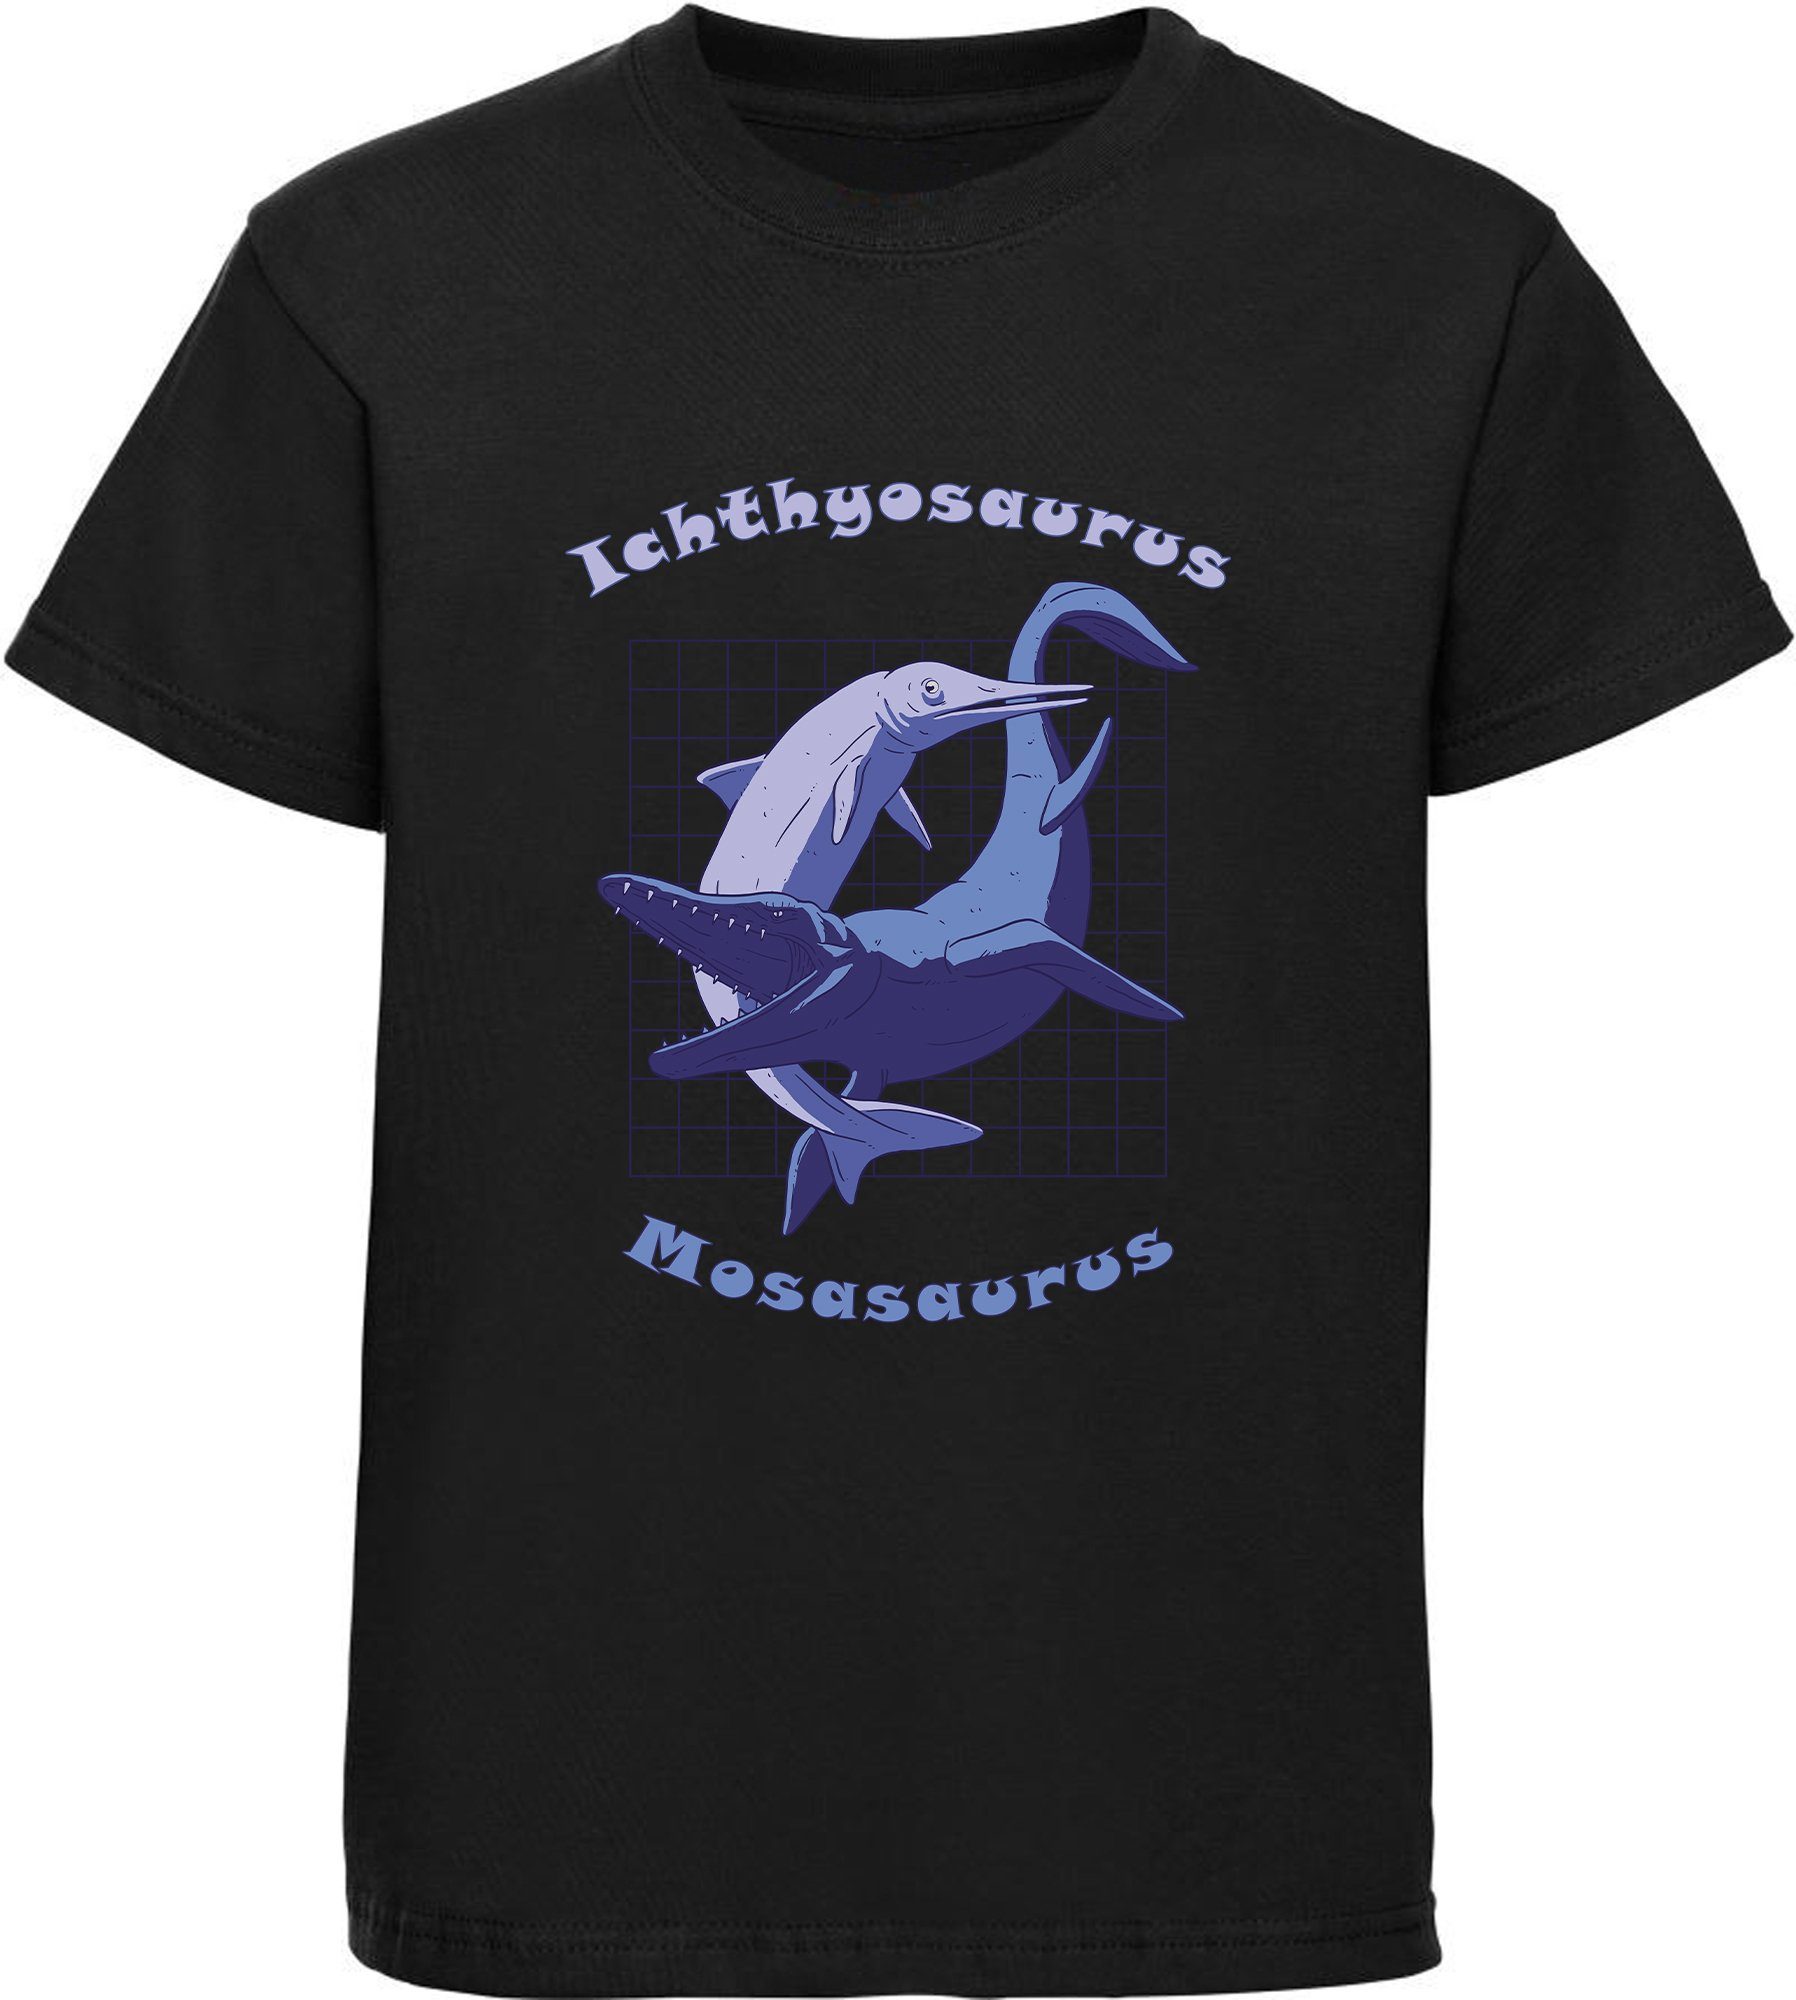 MyDesign24 Print-Shirt bedrucktes Kinder T-Shirt mit Ichthyosaurus und Mosasaurus Baumwollshirt mit Dino, schwarz, weiß, rot, blau, i89